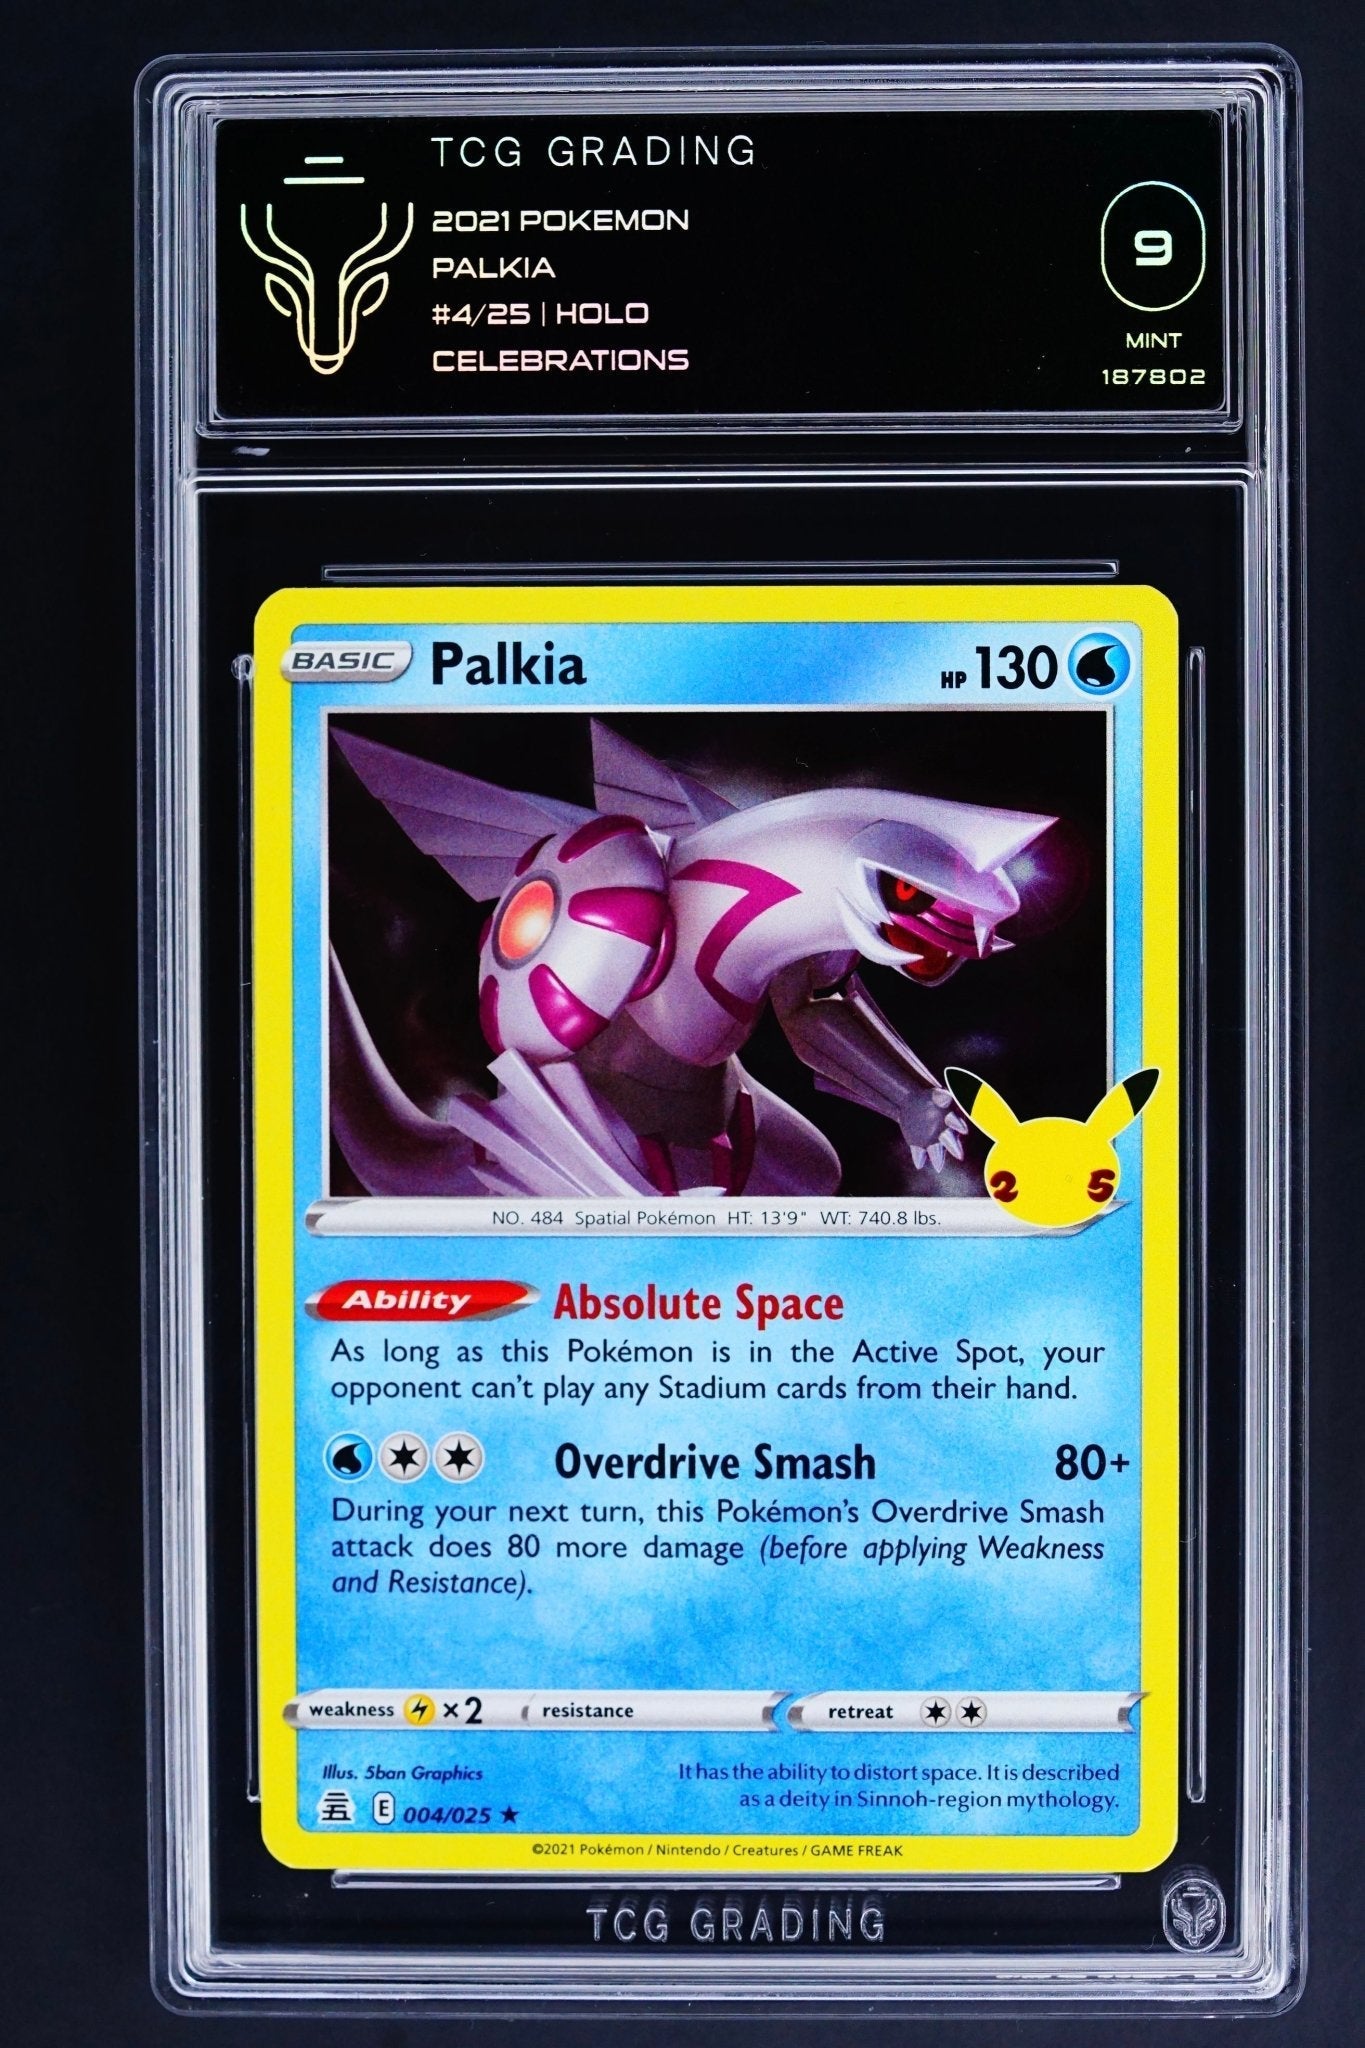 Pokemon Card: Palkia 004/025 Holo Celebrations TCG 9 - THE CARD SPOT PTY LTD.GradedPokémon